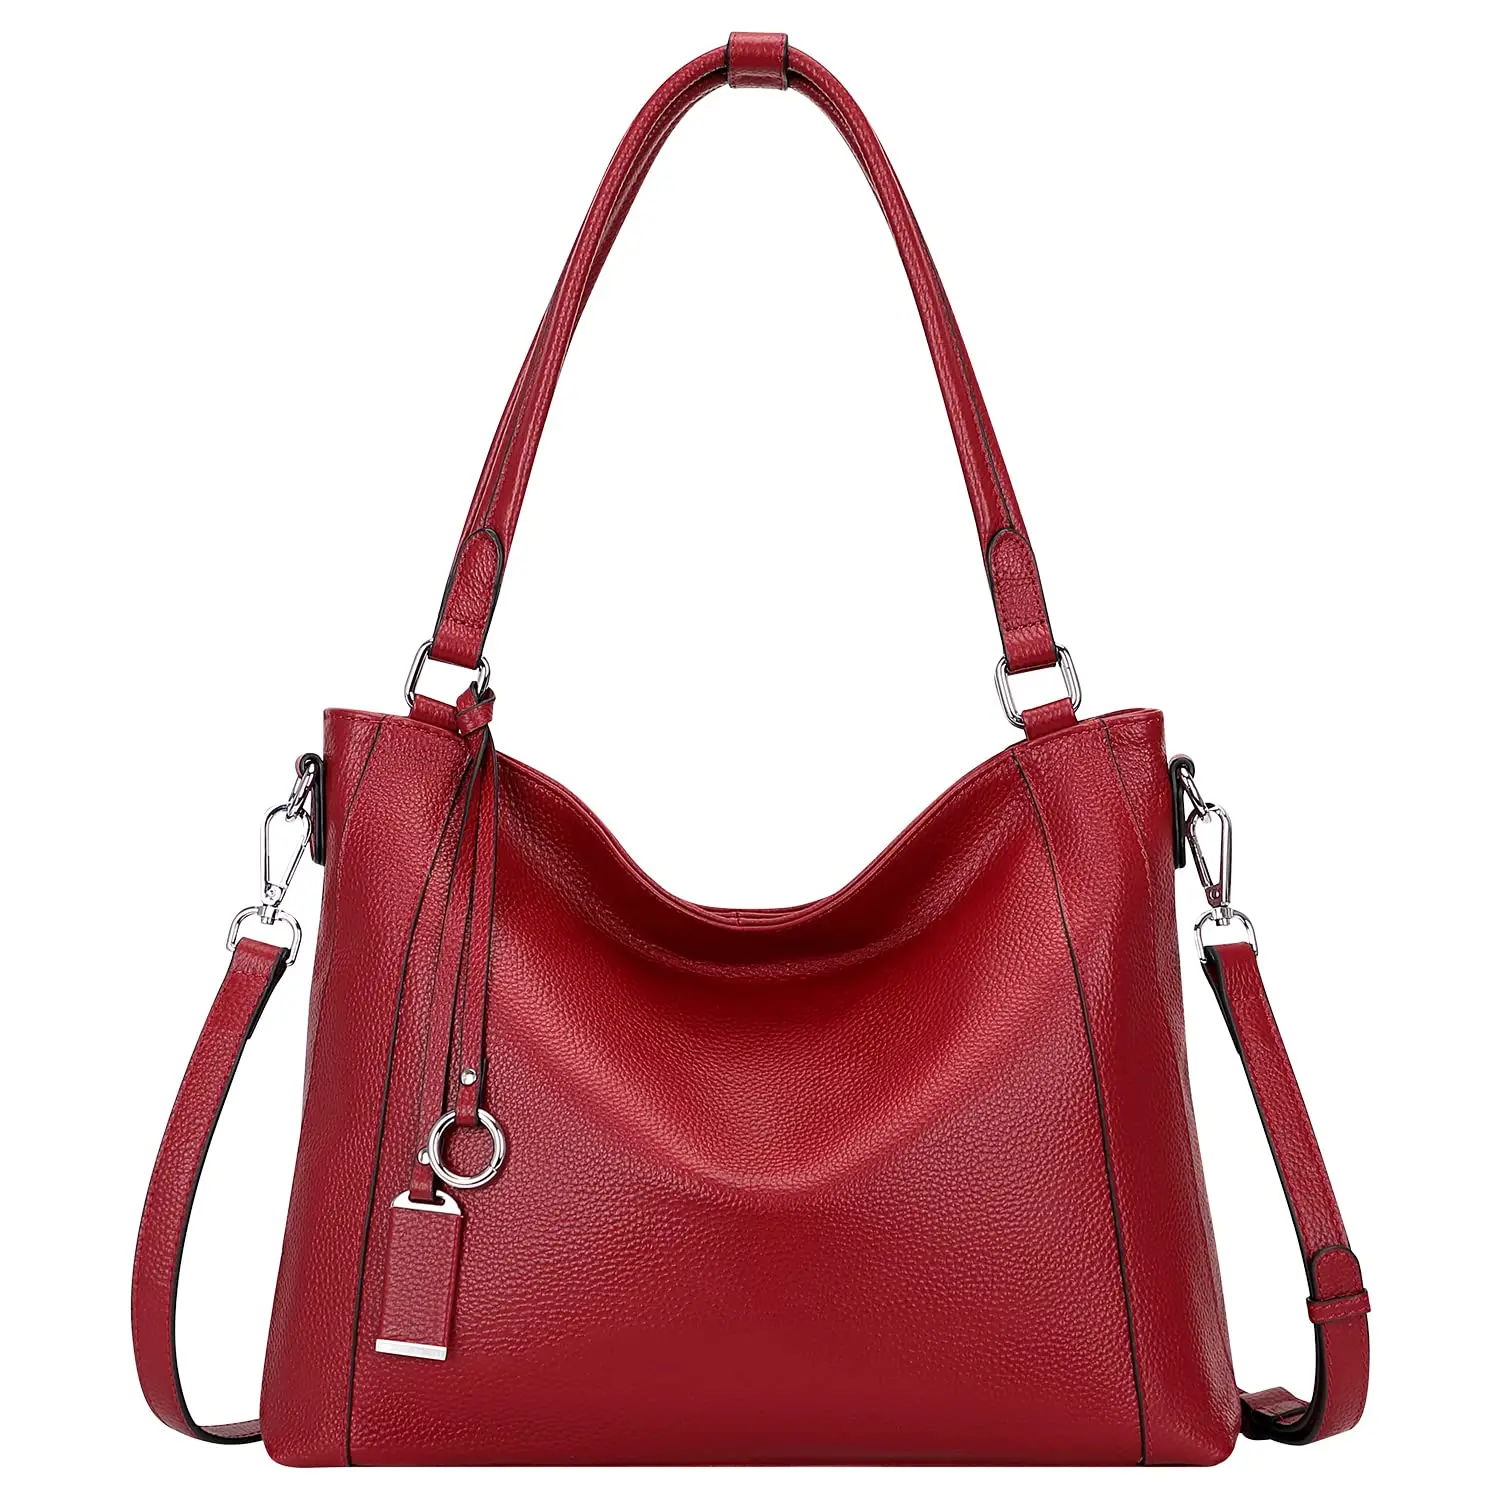 Custom Soft Leather Handbags For Women Shoulder Bag Large Tote ...